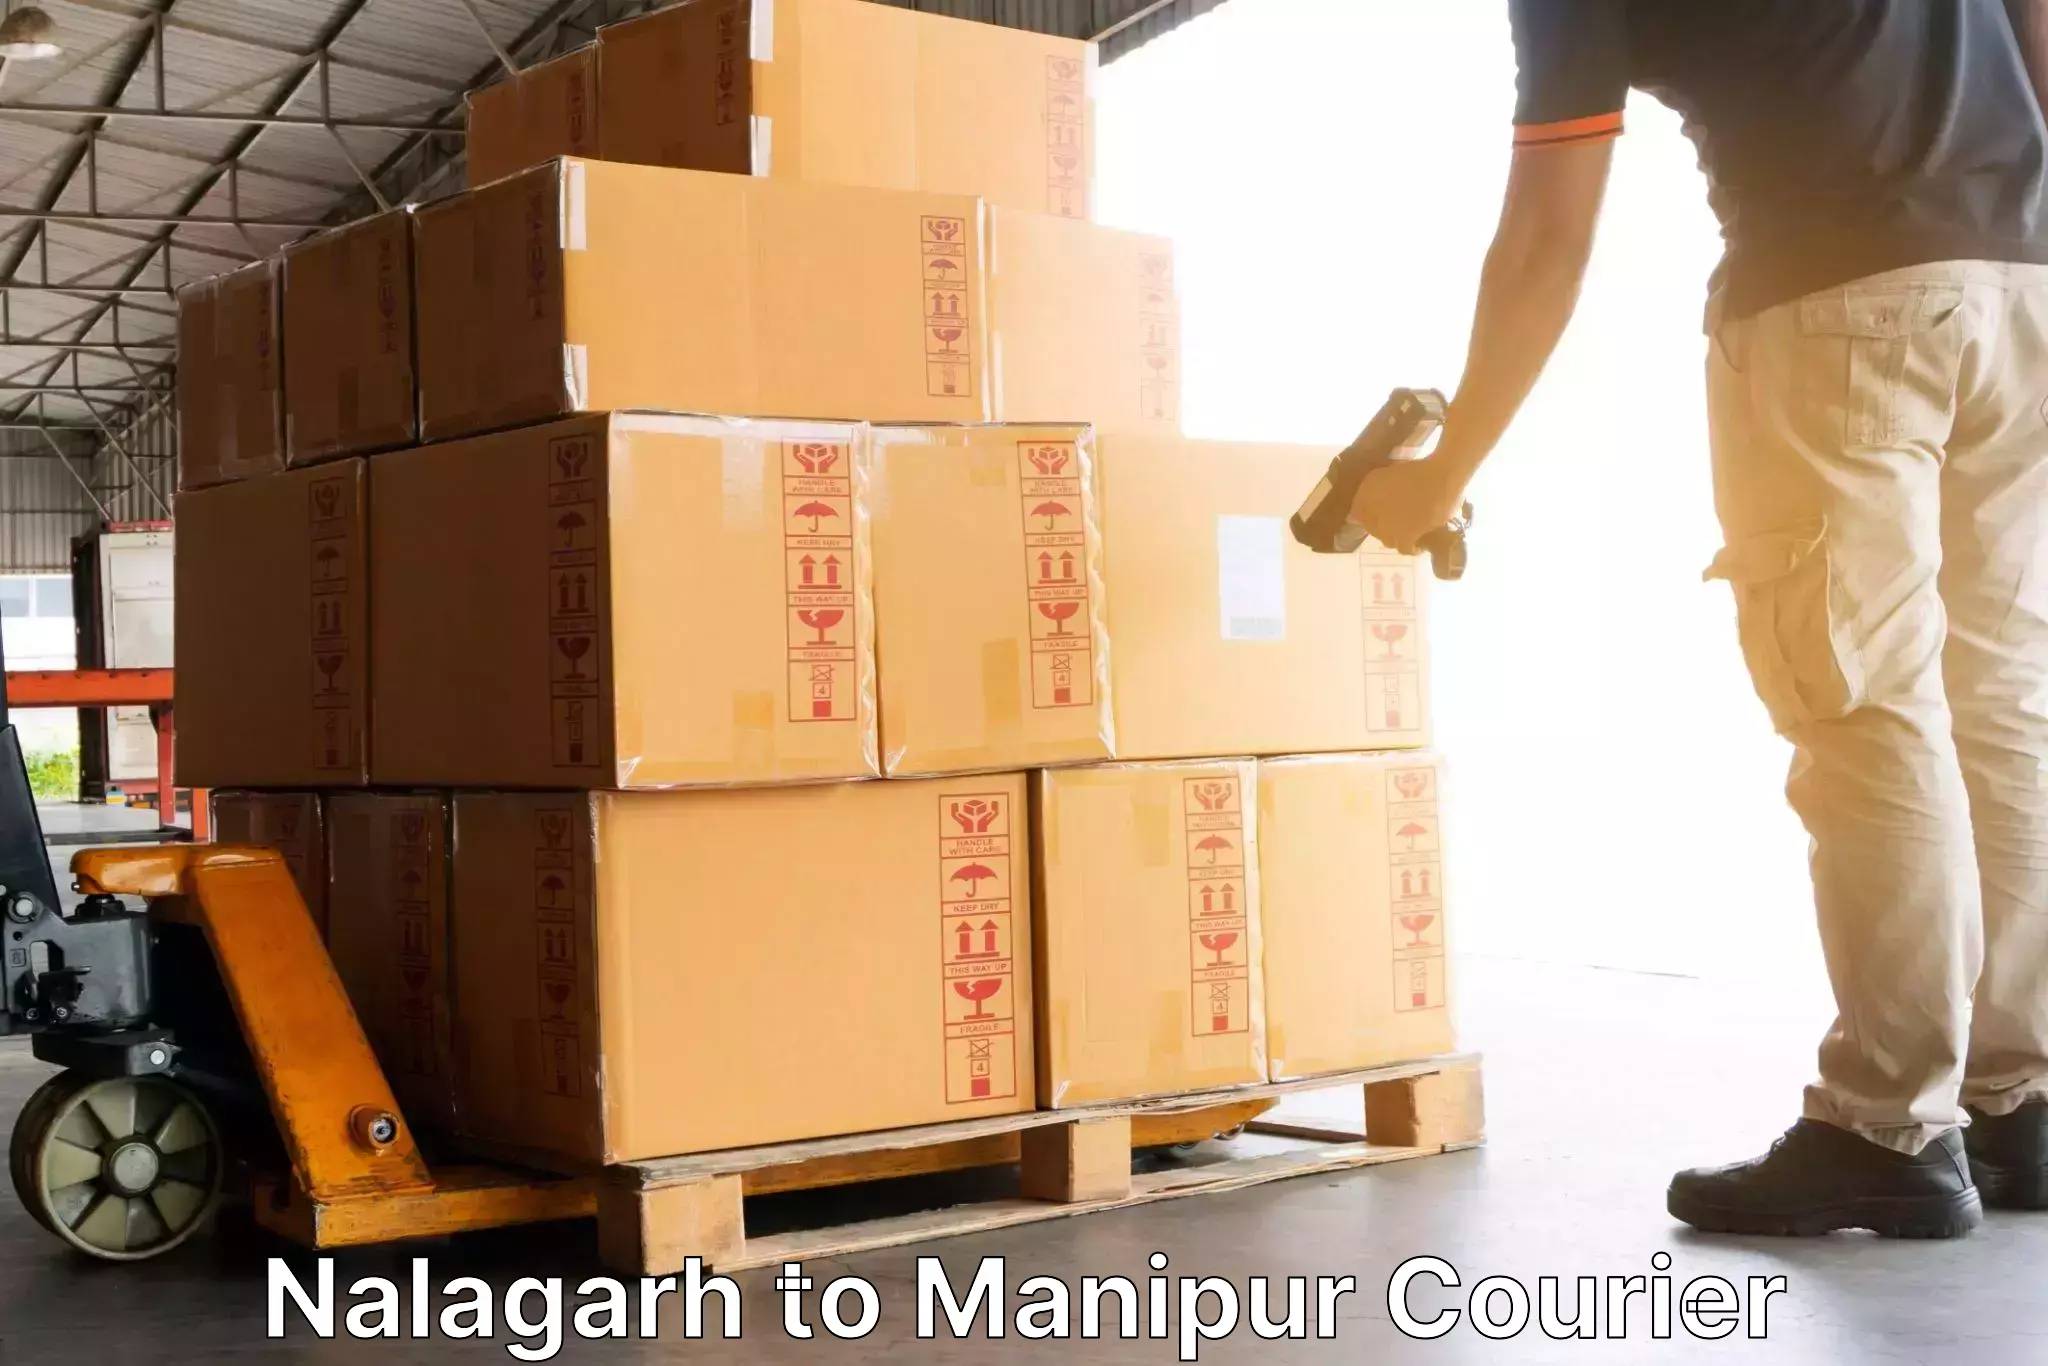 Reliable courier services Nalagarh to Churachandpur